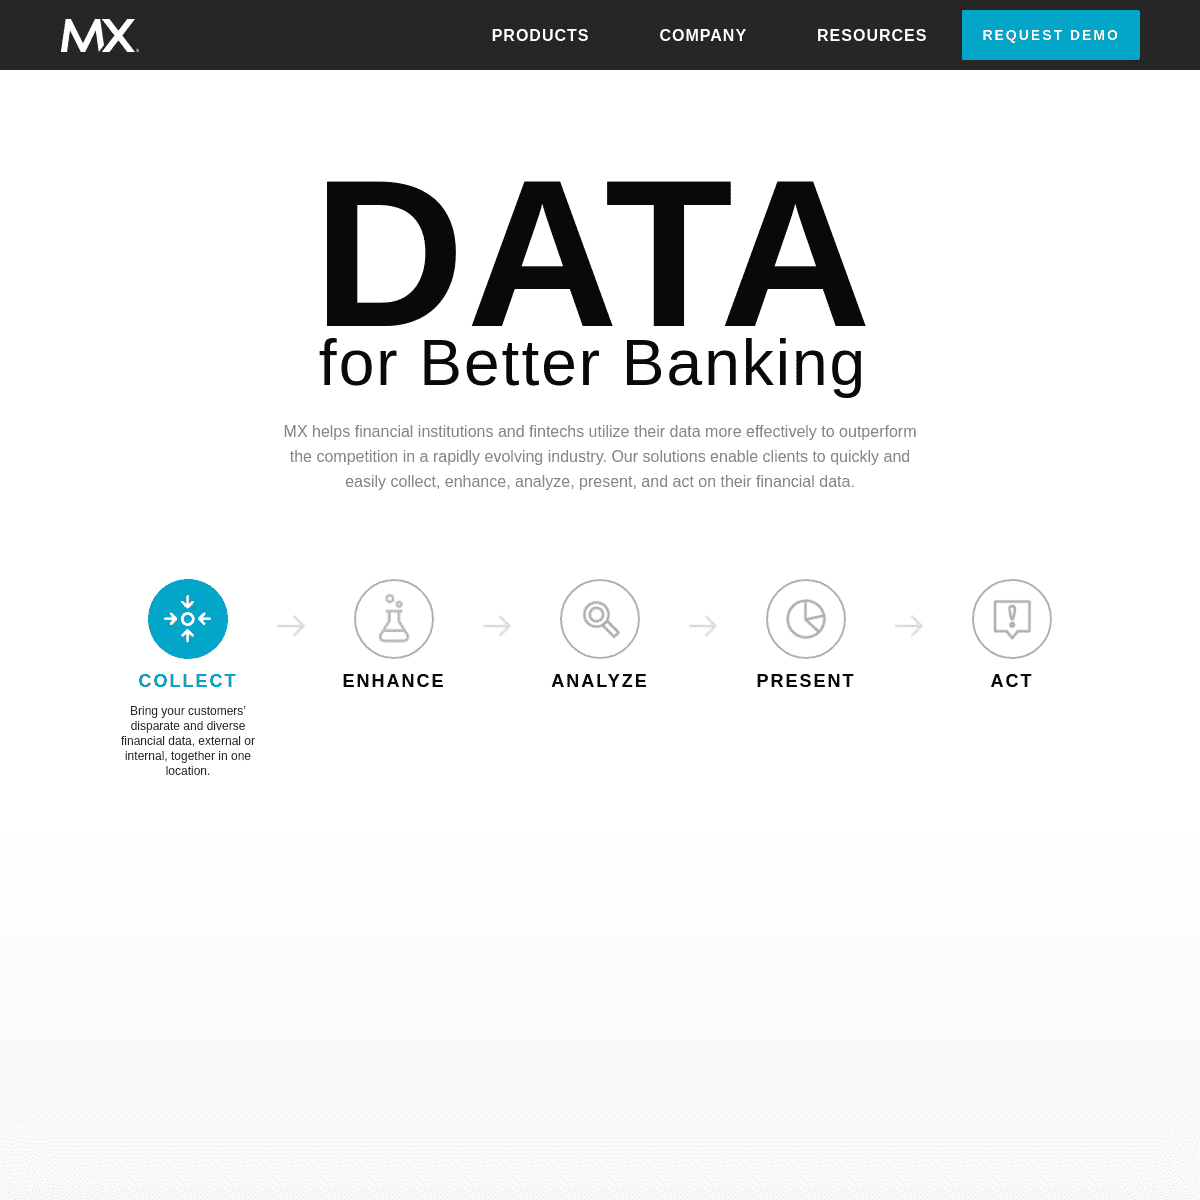 Data for Better Banking | MX